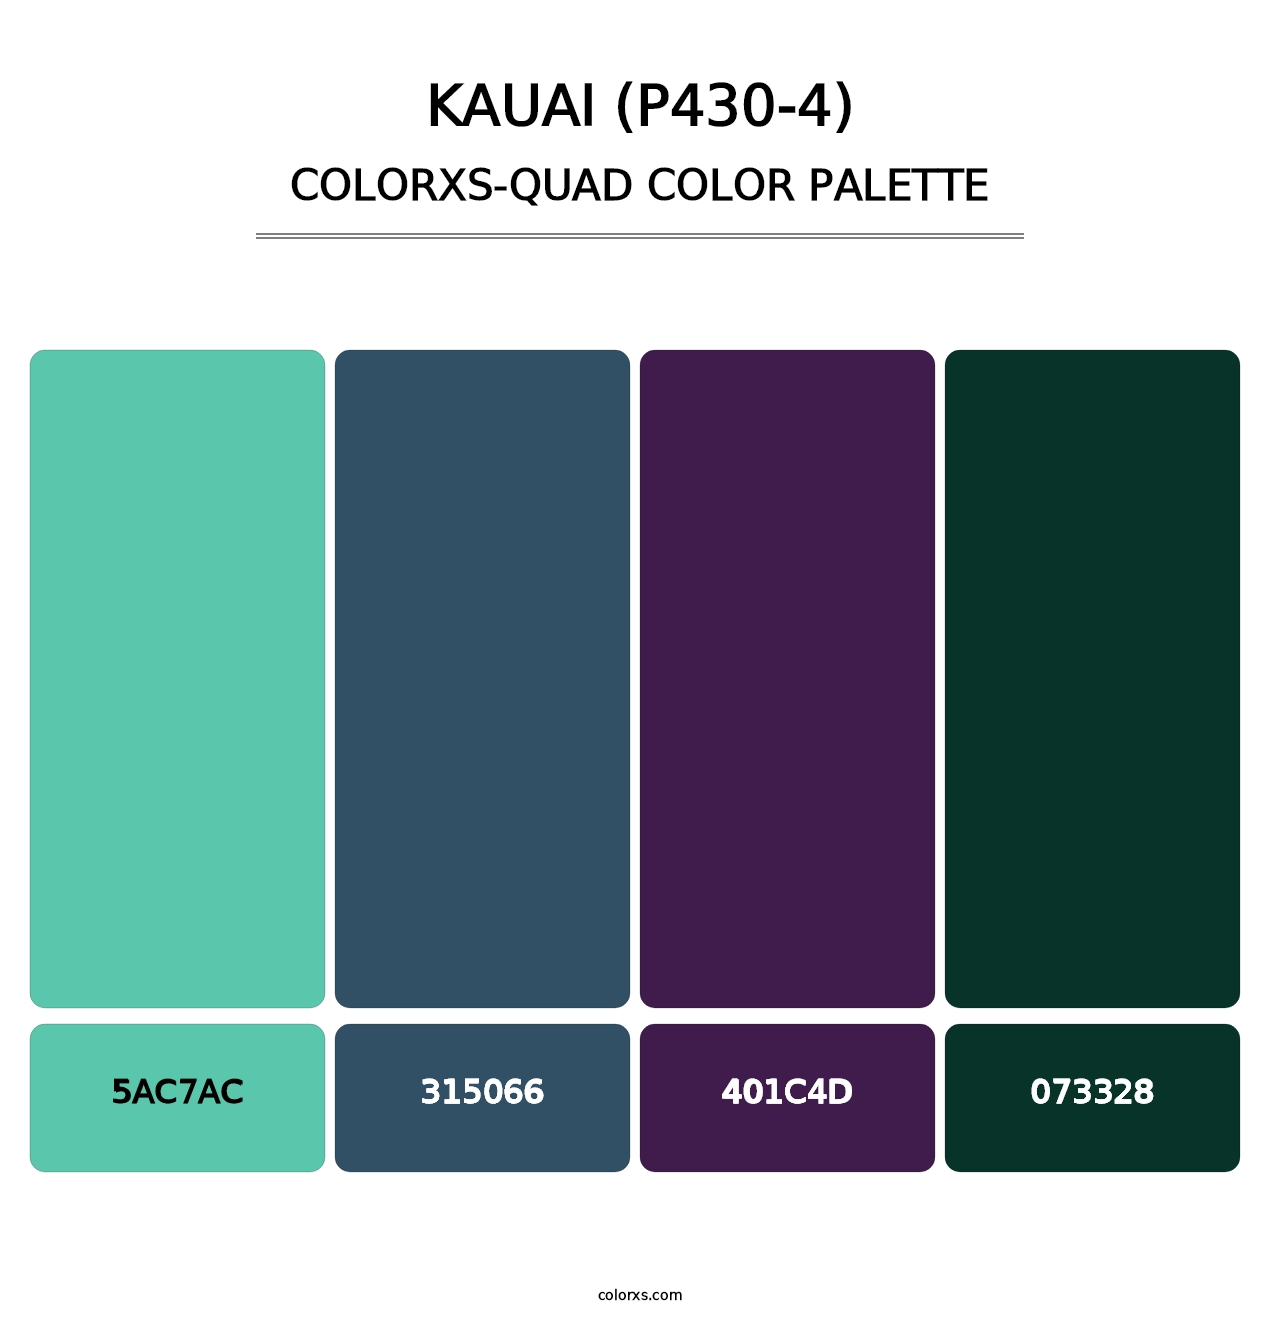 Kauai (P430-4) - Colorxs Quad Palette